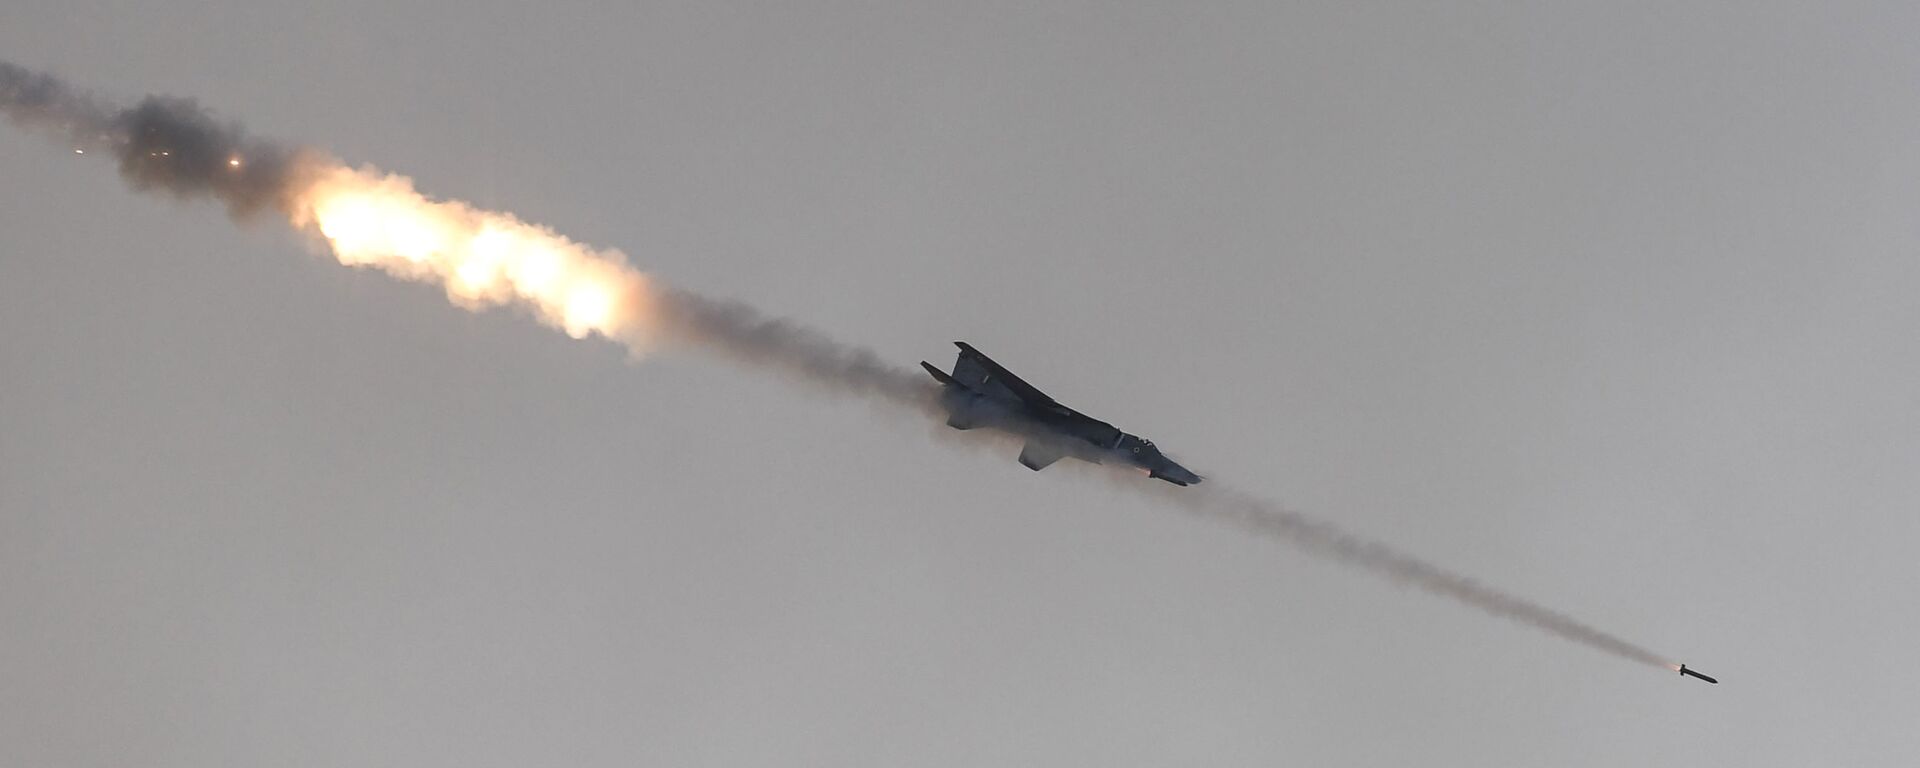 Истребитель ВВС Индии (IAF) стреляет ракетами по фиктивным целям во время демонстрации огневой мощи IAF «Яю Шакти» в Покхаране, штат Раджастхан, 16 февраля 2019 г - Sputnik Абхазия, 1920, 03.08.2021